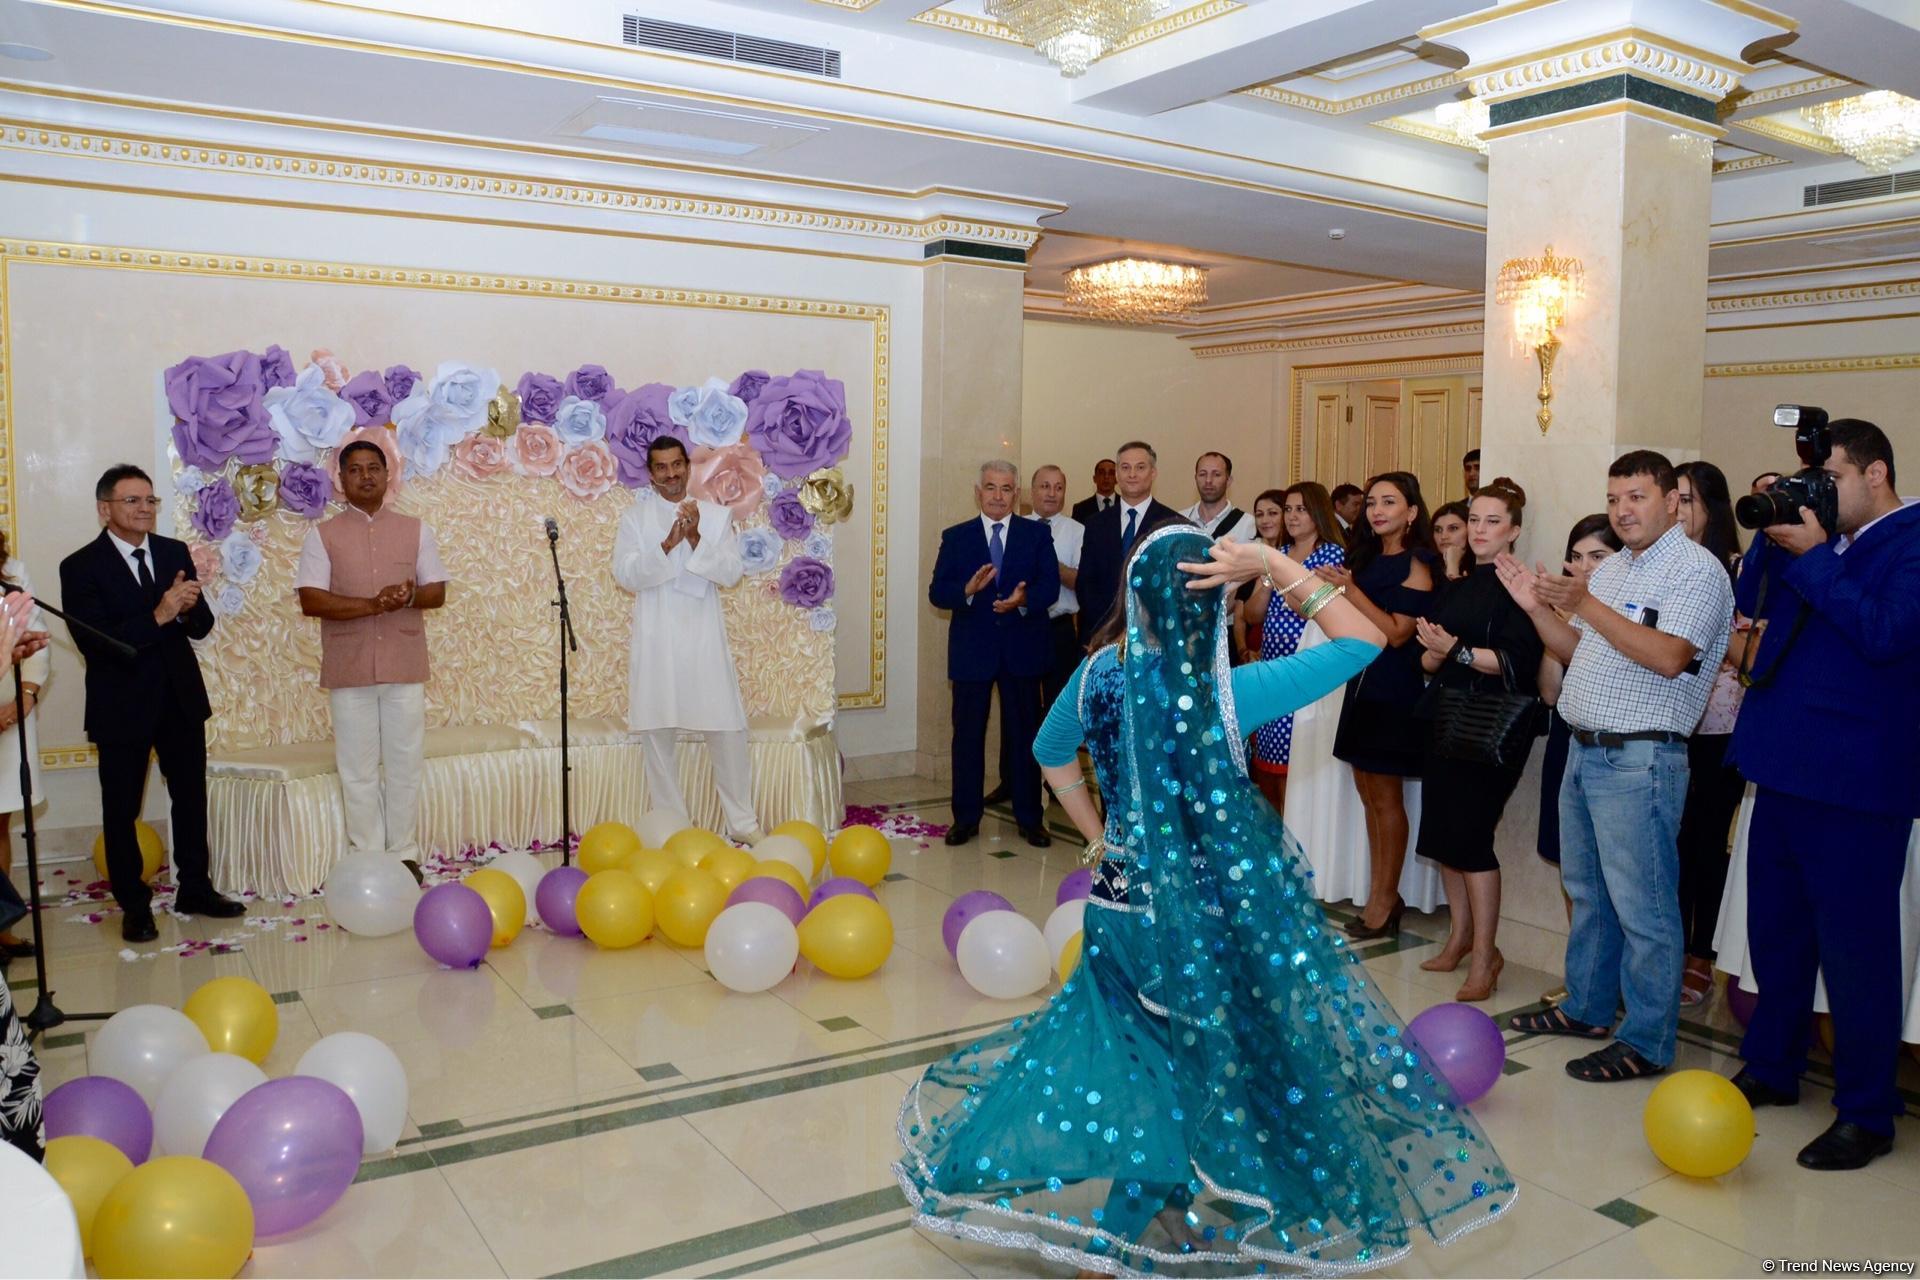 В Баку открылась "Школа классической йоги" (ФОТО)